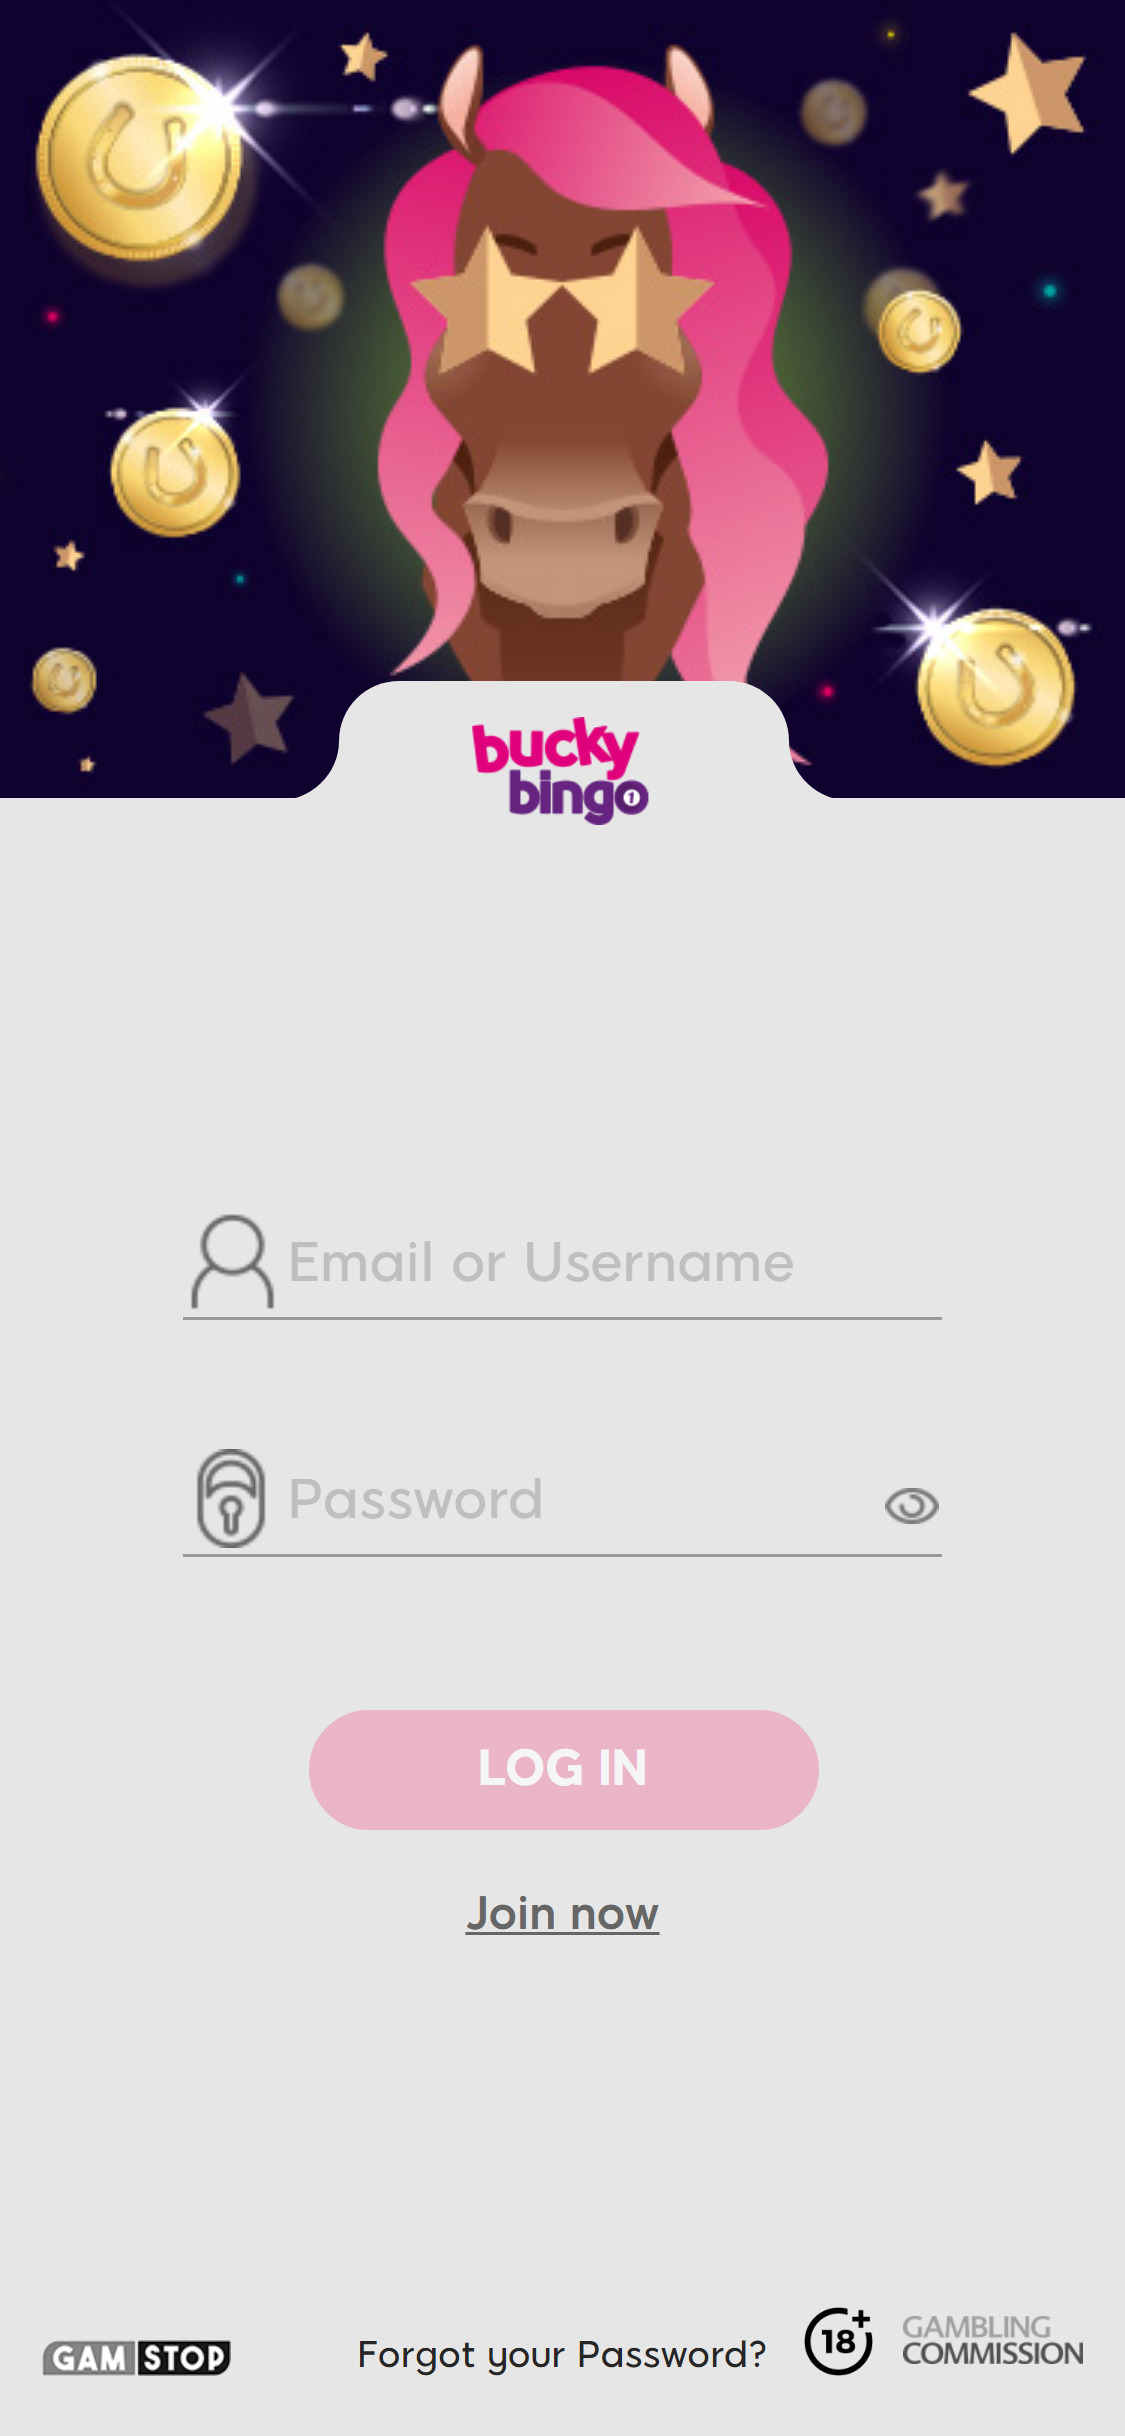 Bucky Bingo Casino Mobile Login Review